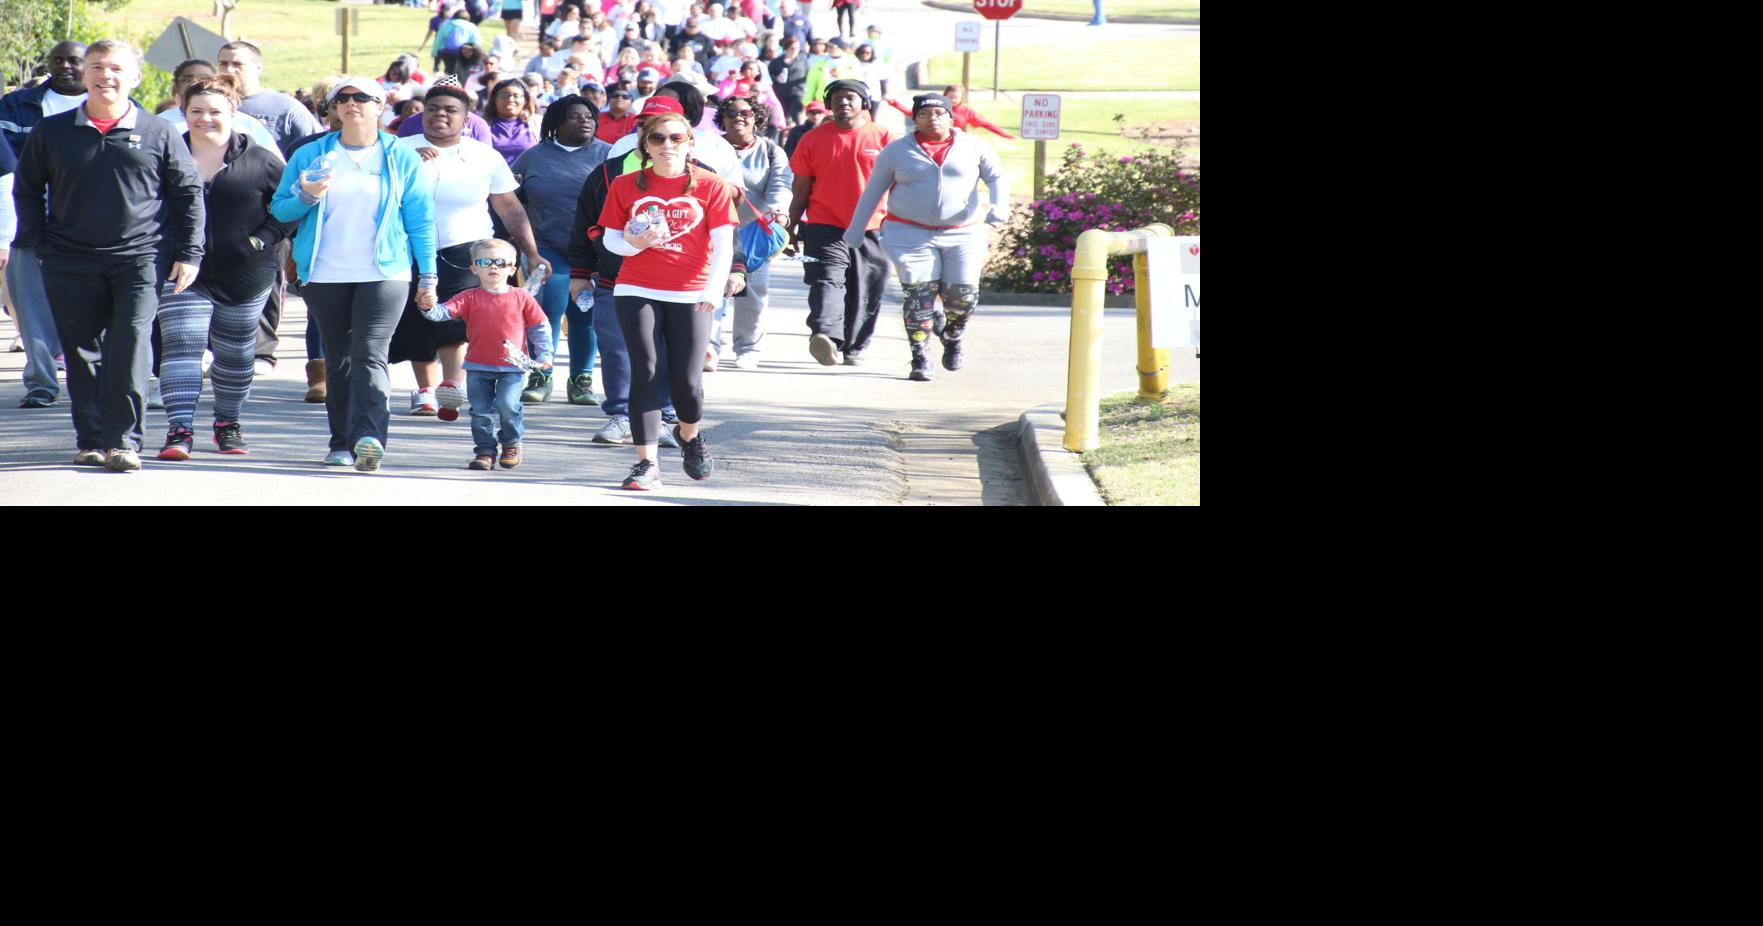 Thousands pack Greeneway for CSRA Heart Walk News